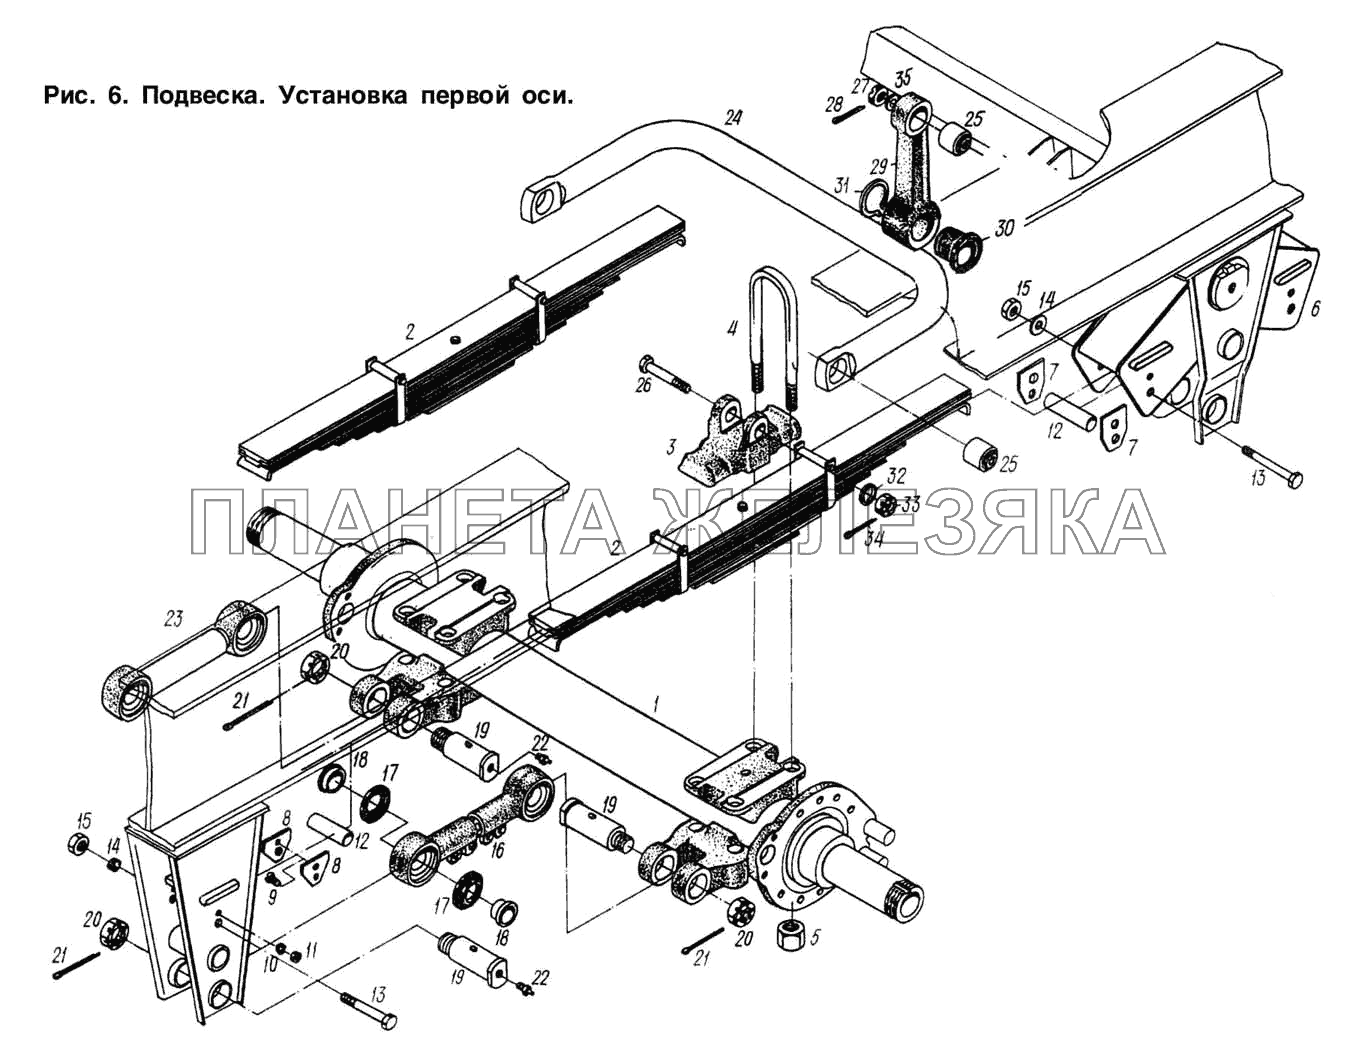 Подвеска. Установка первой оси МАЗ-93892